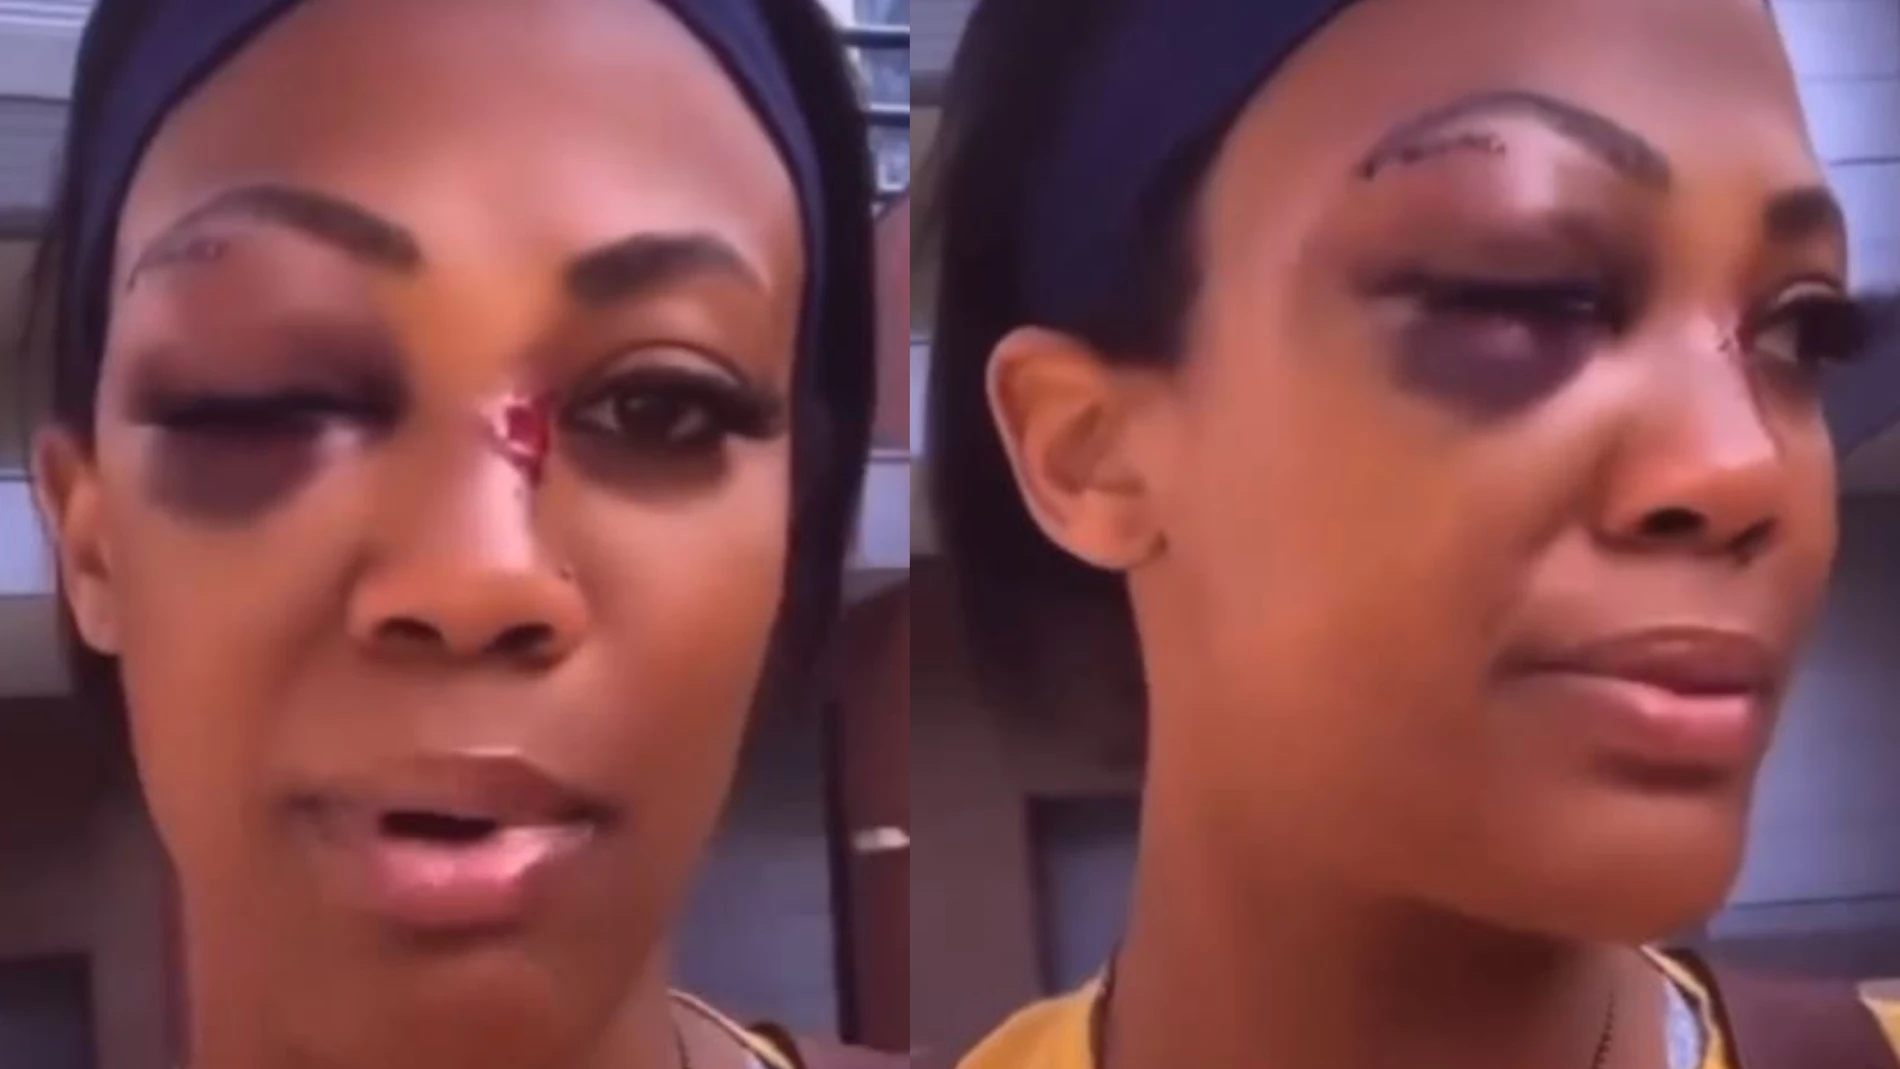 La medallista olímpica Kim Glass muestra sus heridas en la cara tras la escalofriante agresión de un vagabundo